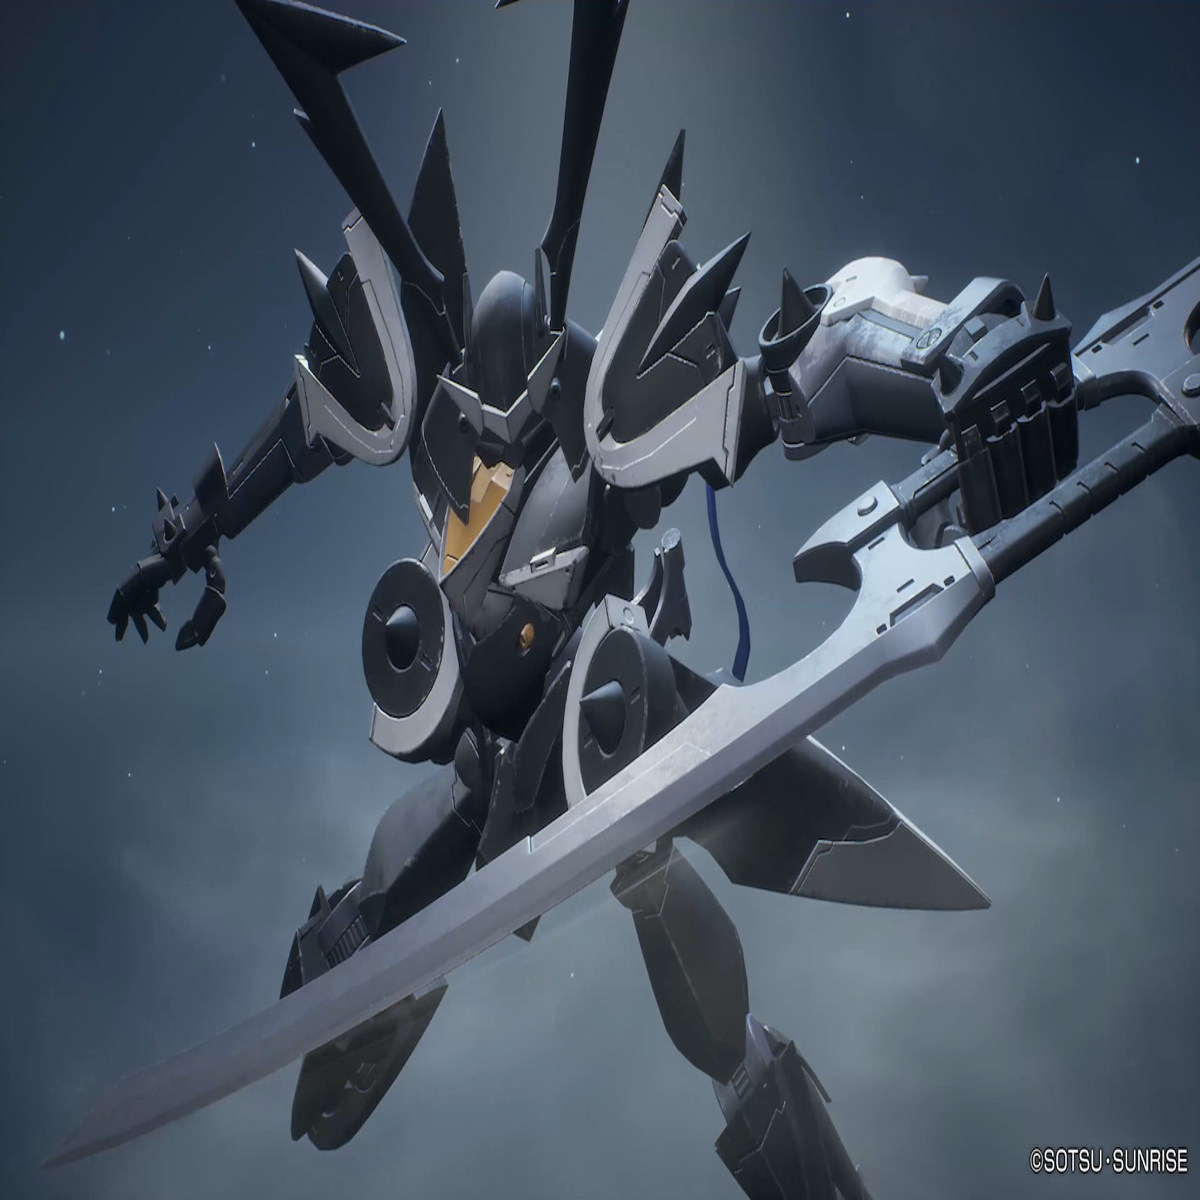 Gundam Evolution traz a ação de um jogo free-to-play de tiro em